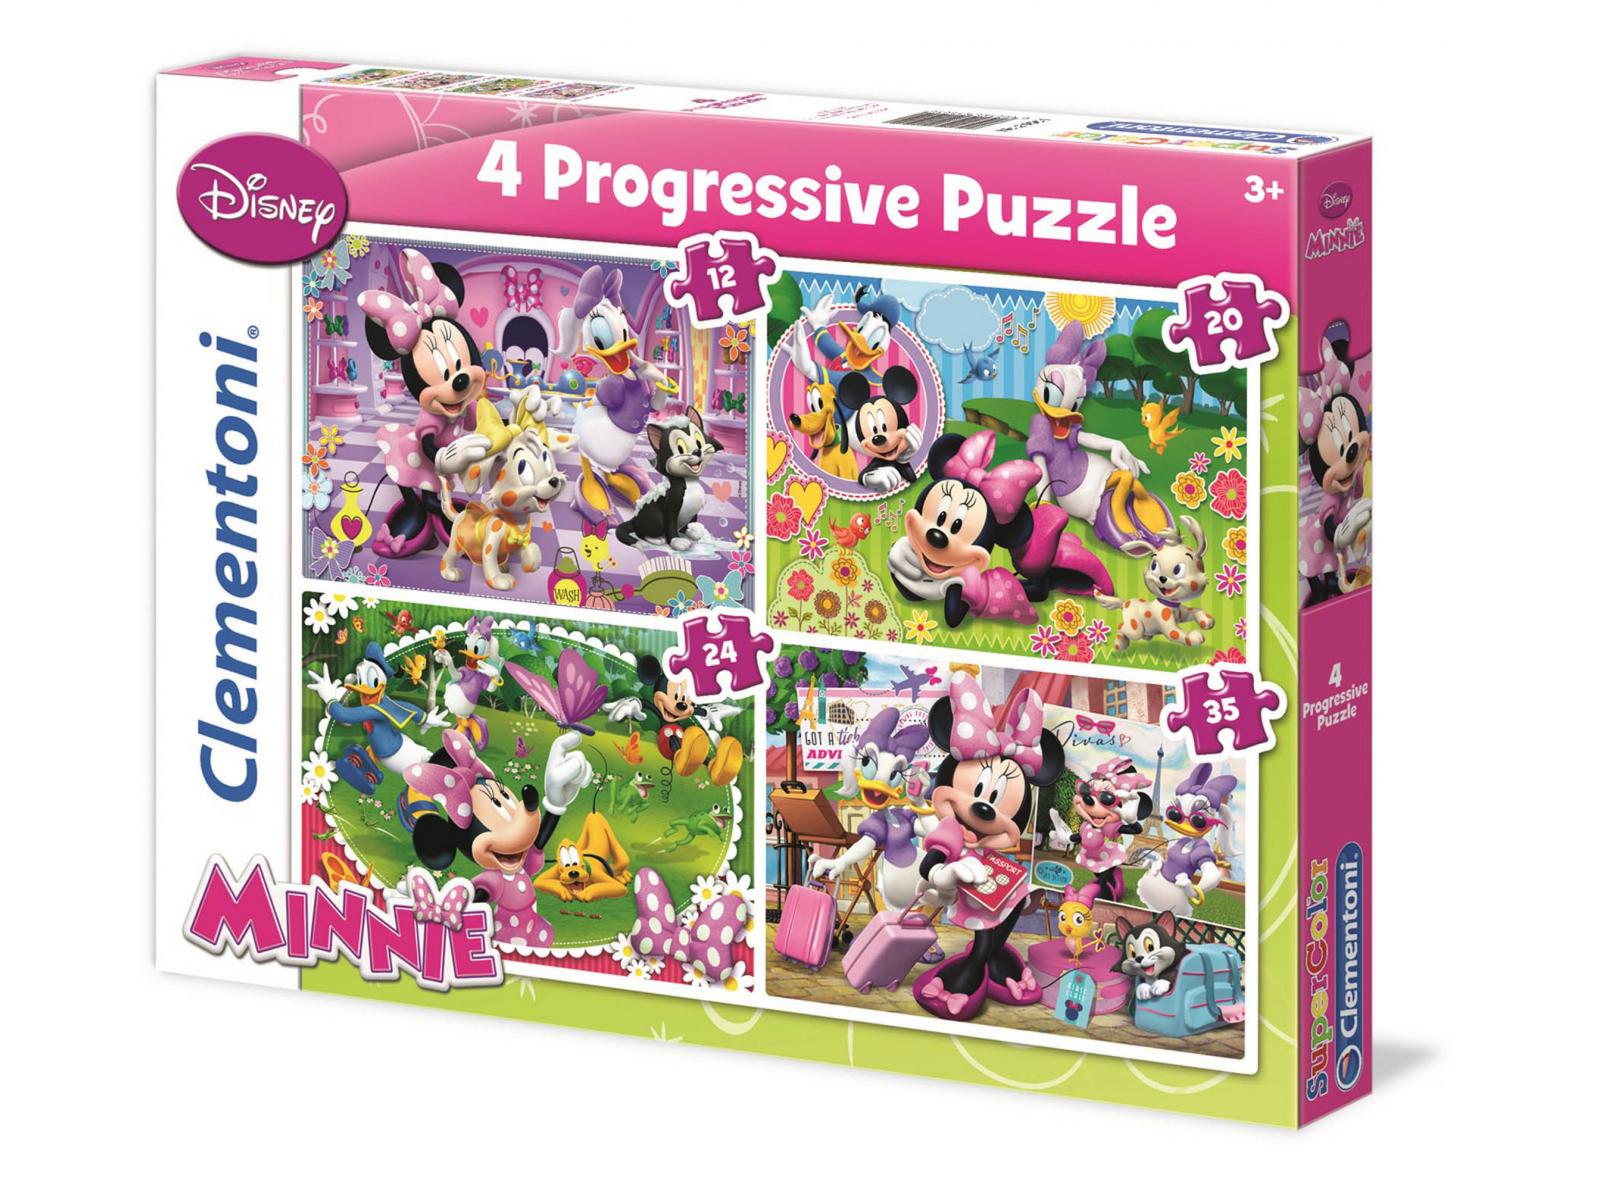 Clementoni - Puzzle progressive 4 en 1 12 + 20 + 24 + 35 pièces